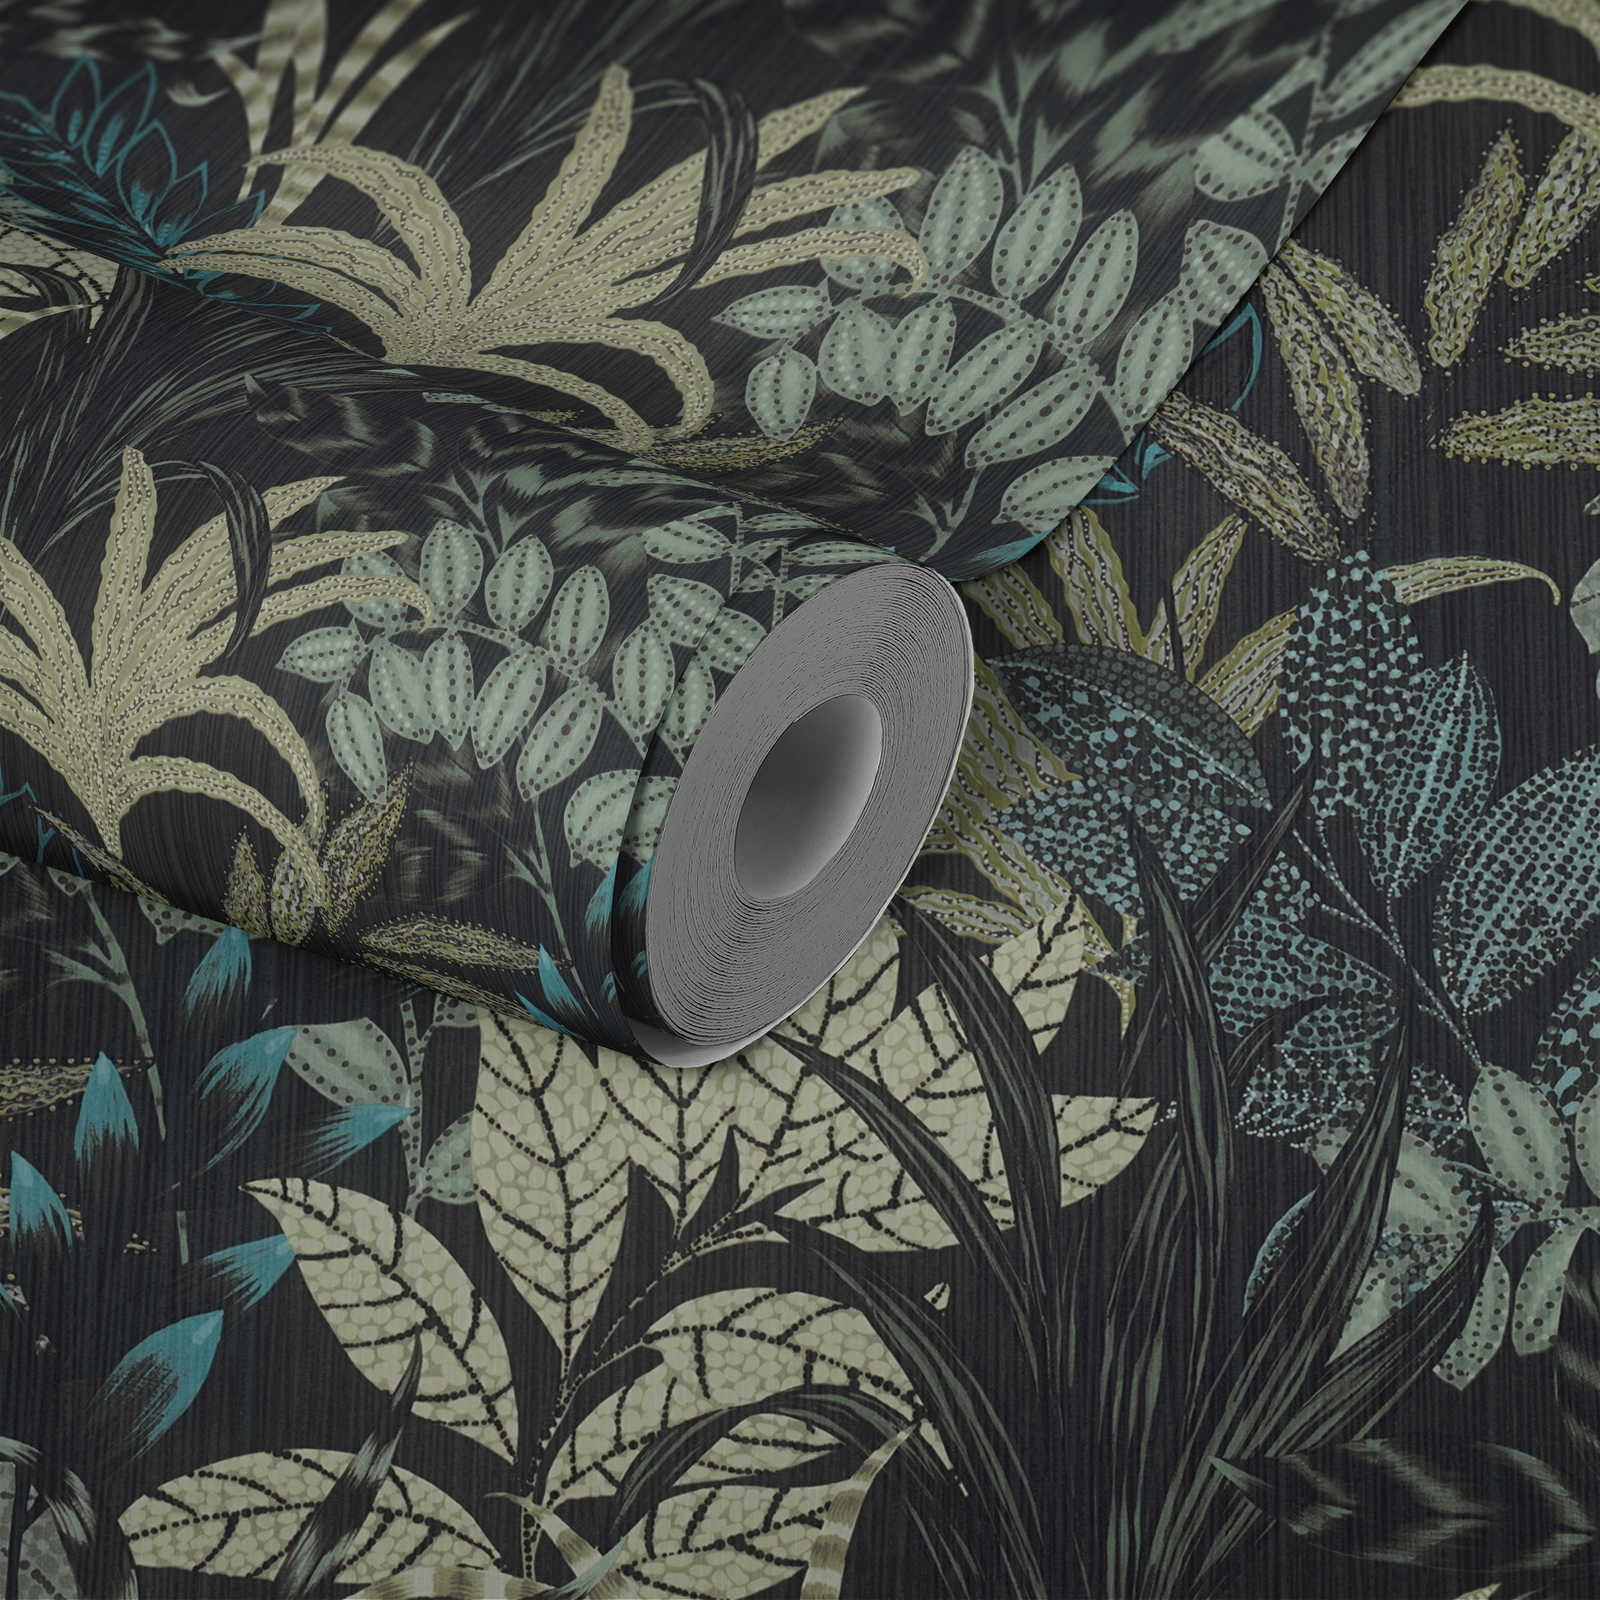             Natürliche Mustertapete mit Dschungel Design – Grün, Schwarz
        